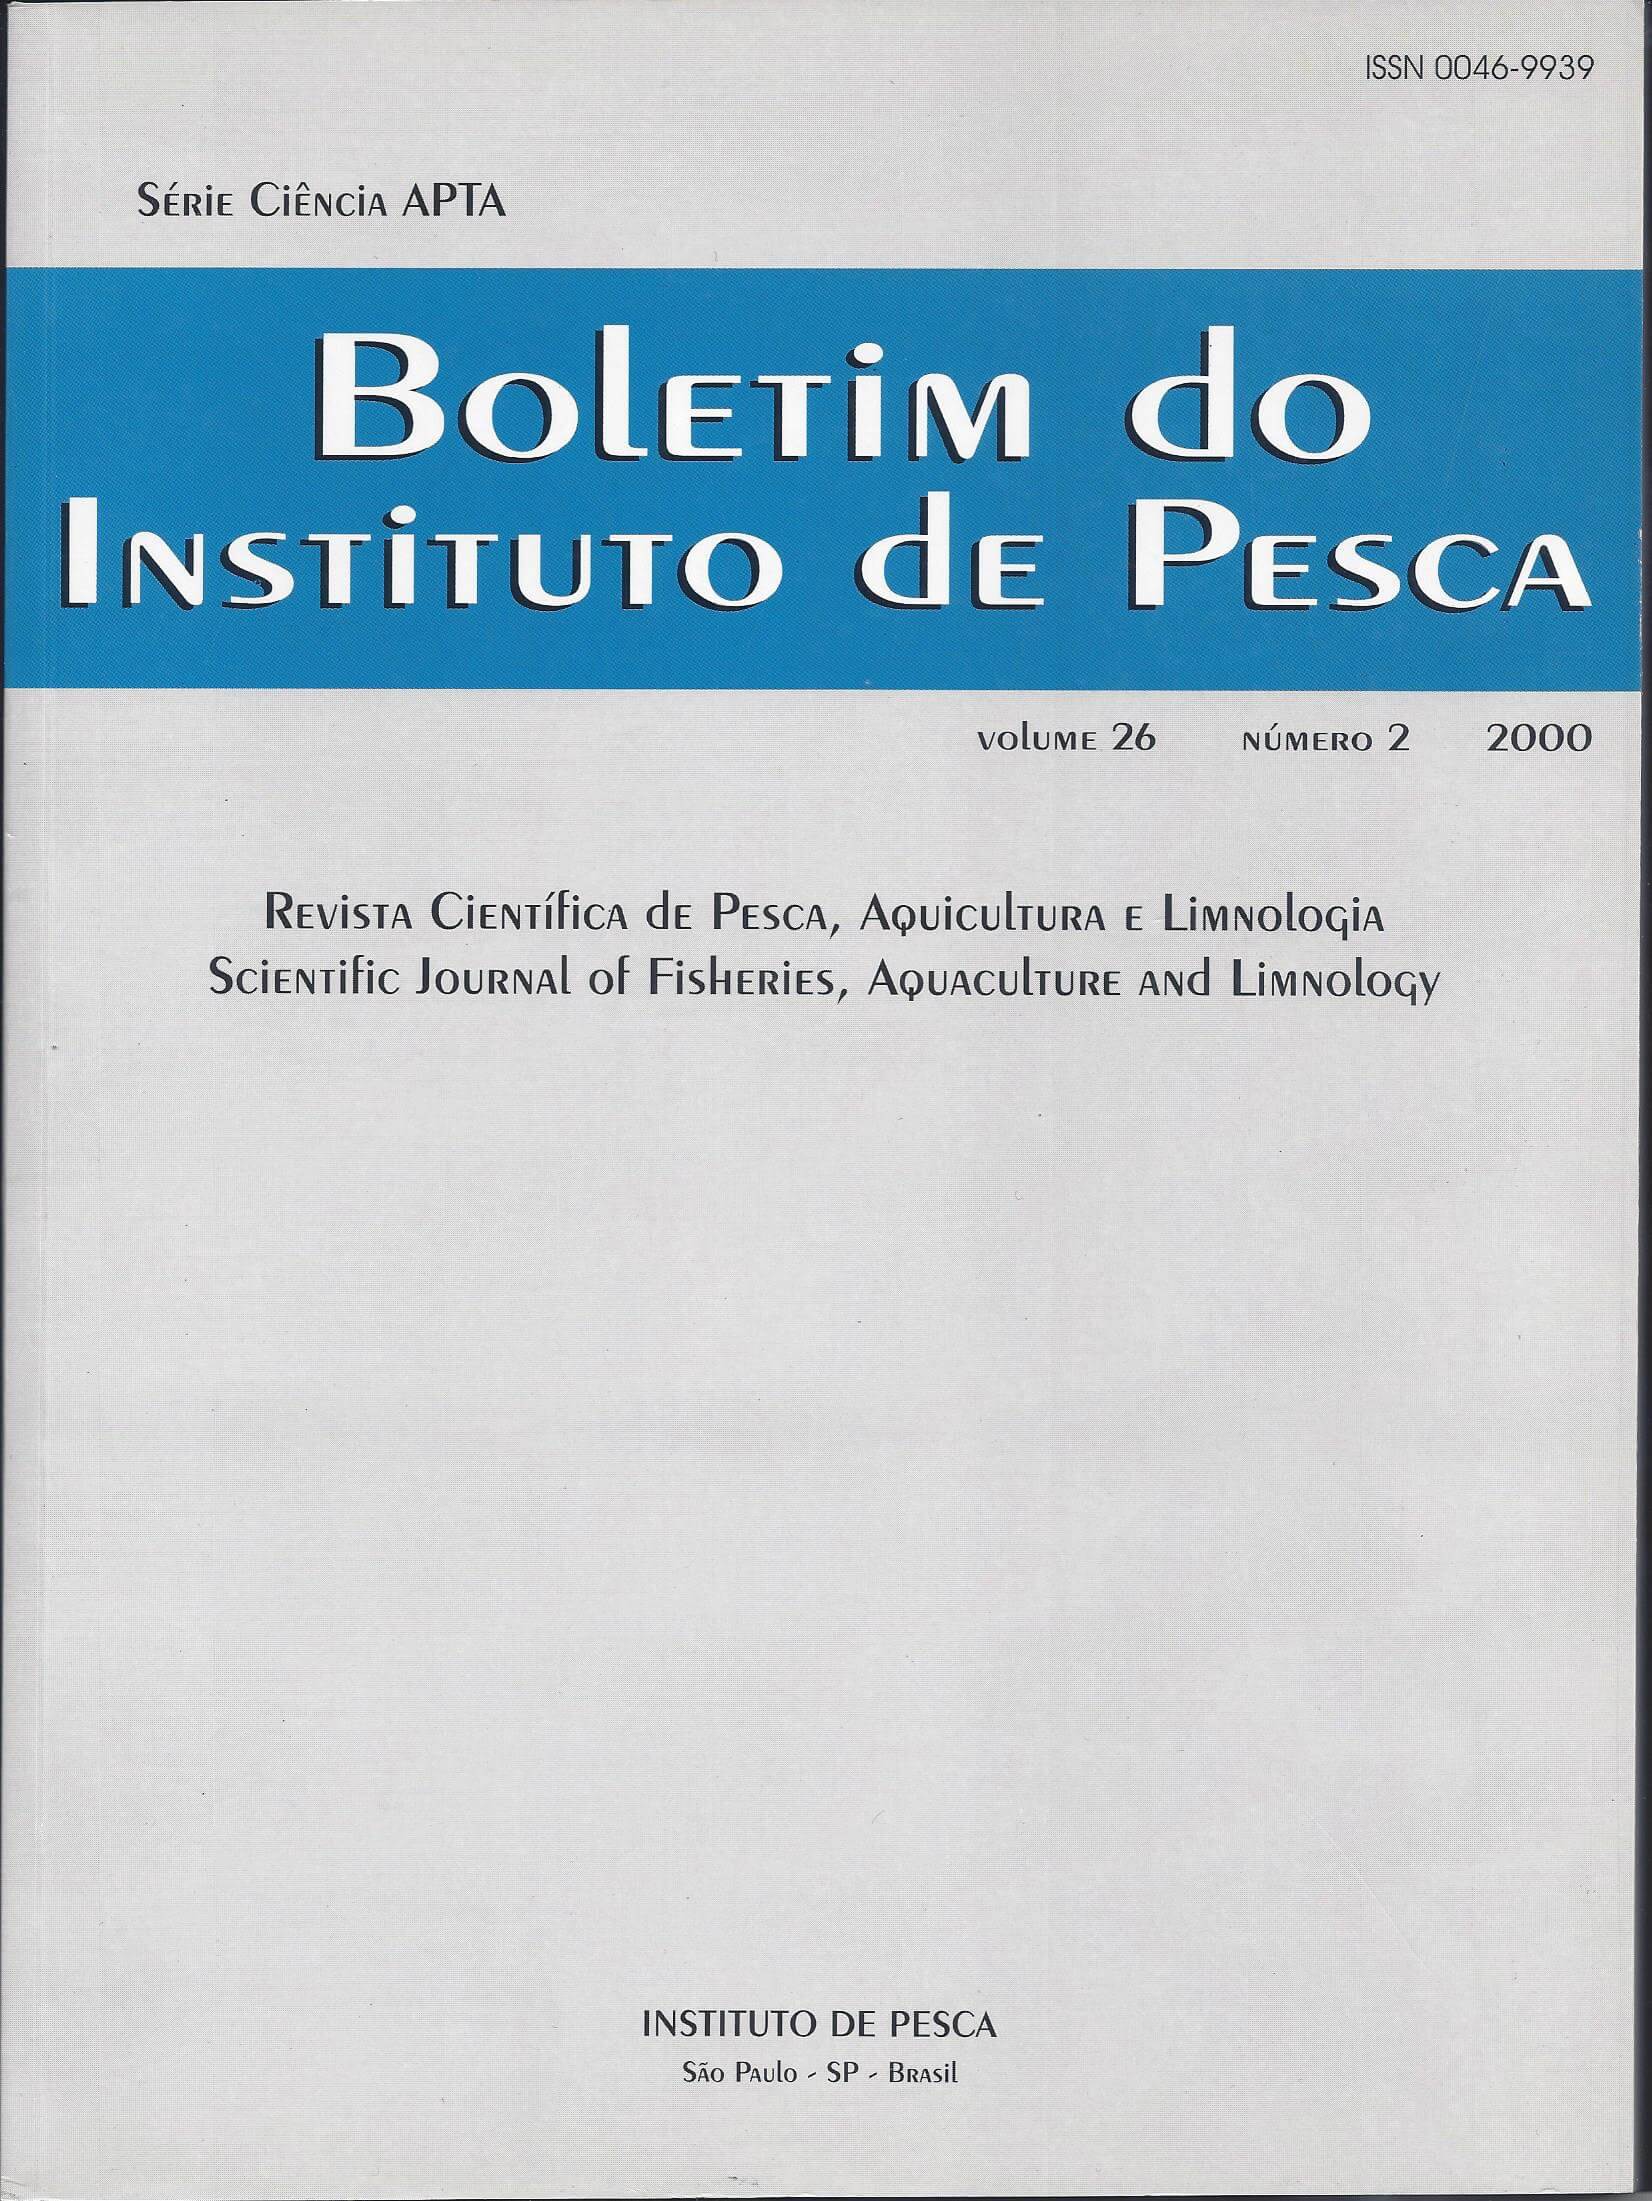 					Visualizar v. 26 n. 2 (2000): BOLETIM DO INSTITUTO DE PESCA
				